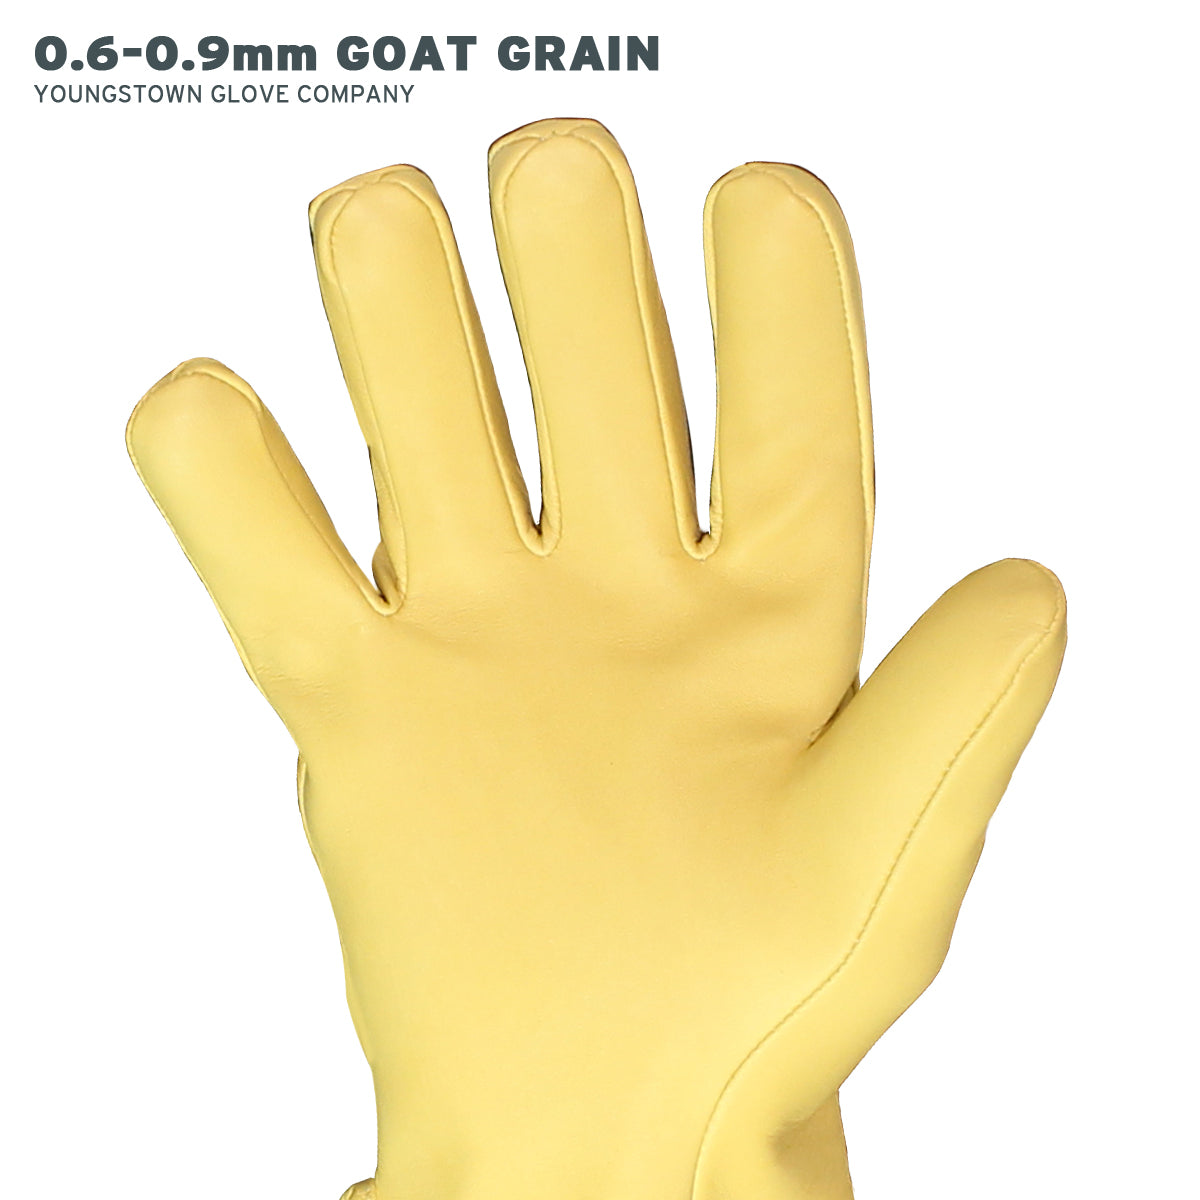 CHANCE® Glove Protector 10IN Goatskin Nylon Strap, Size 10-10H